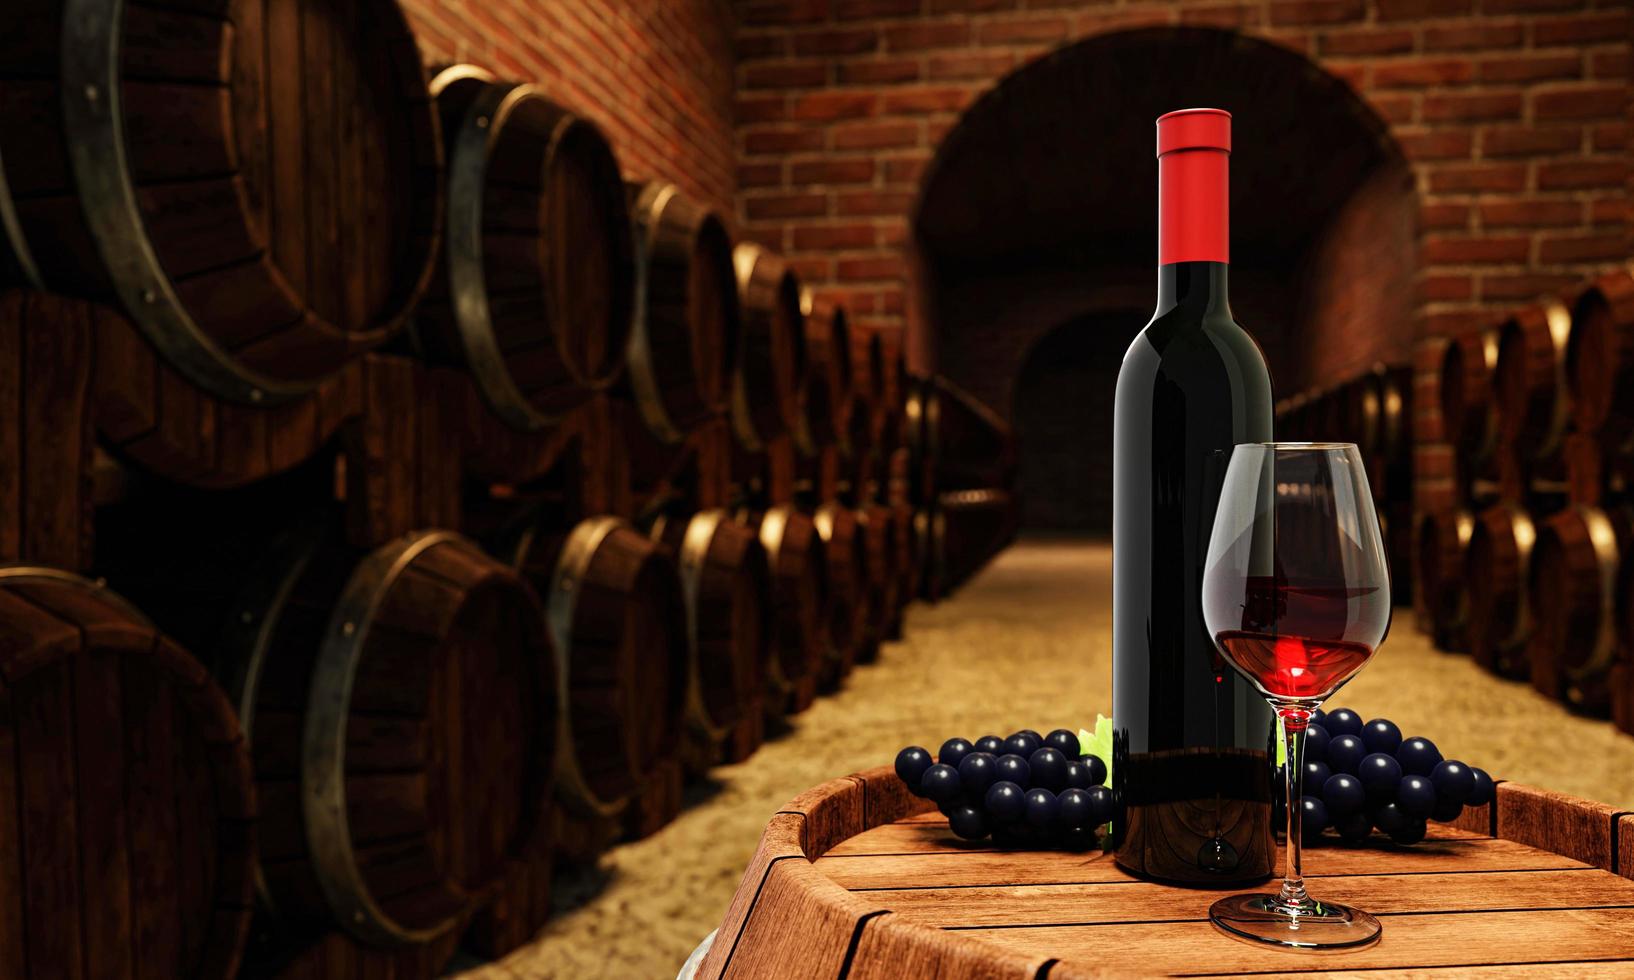 bouteille de vin rouge et verre transparent avec du vin rouge mis sur une cuve de fermentation de vin avec de nombreux réservoirs de fermentation de vin placés près du mur de briques rouges dans la cave ou le sous-sol. rendu 3d photo